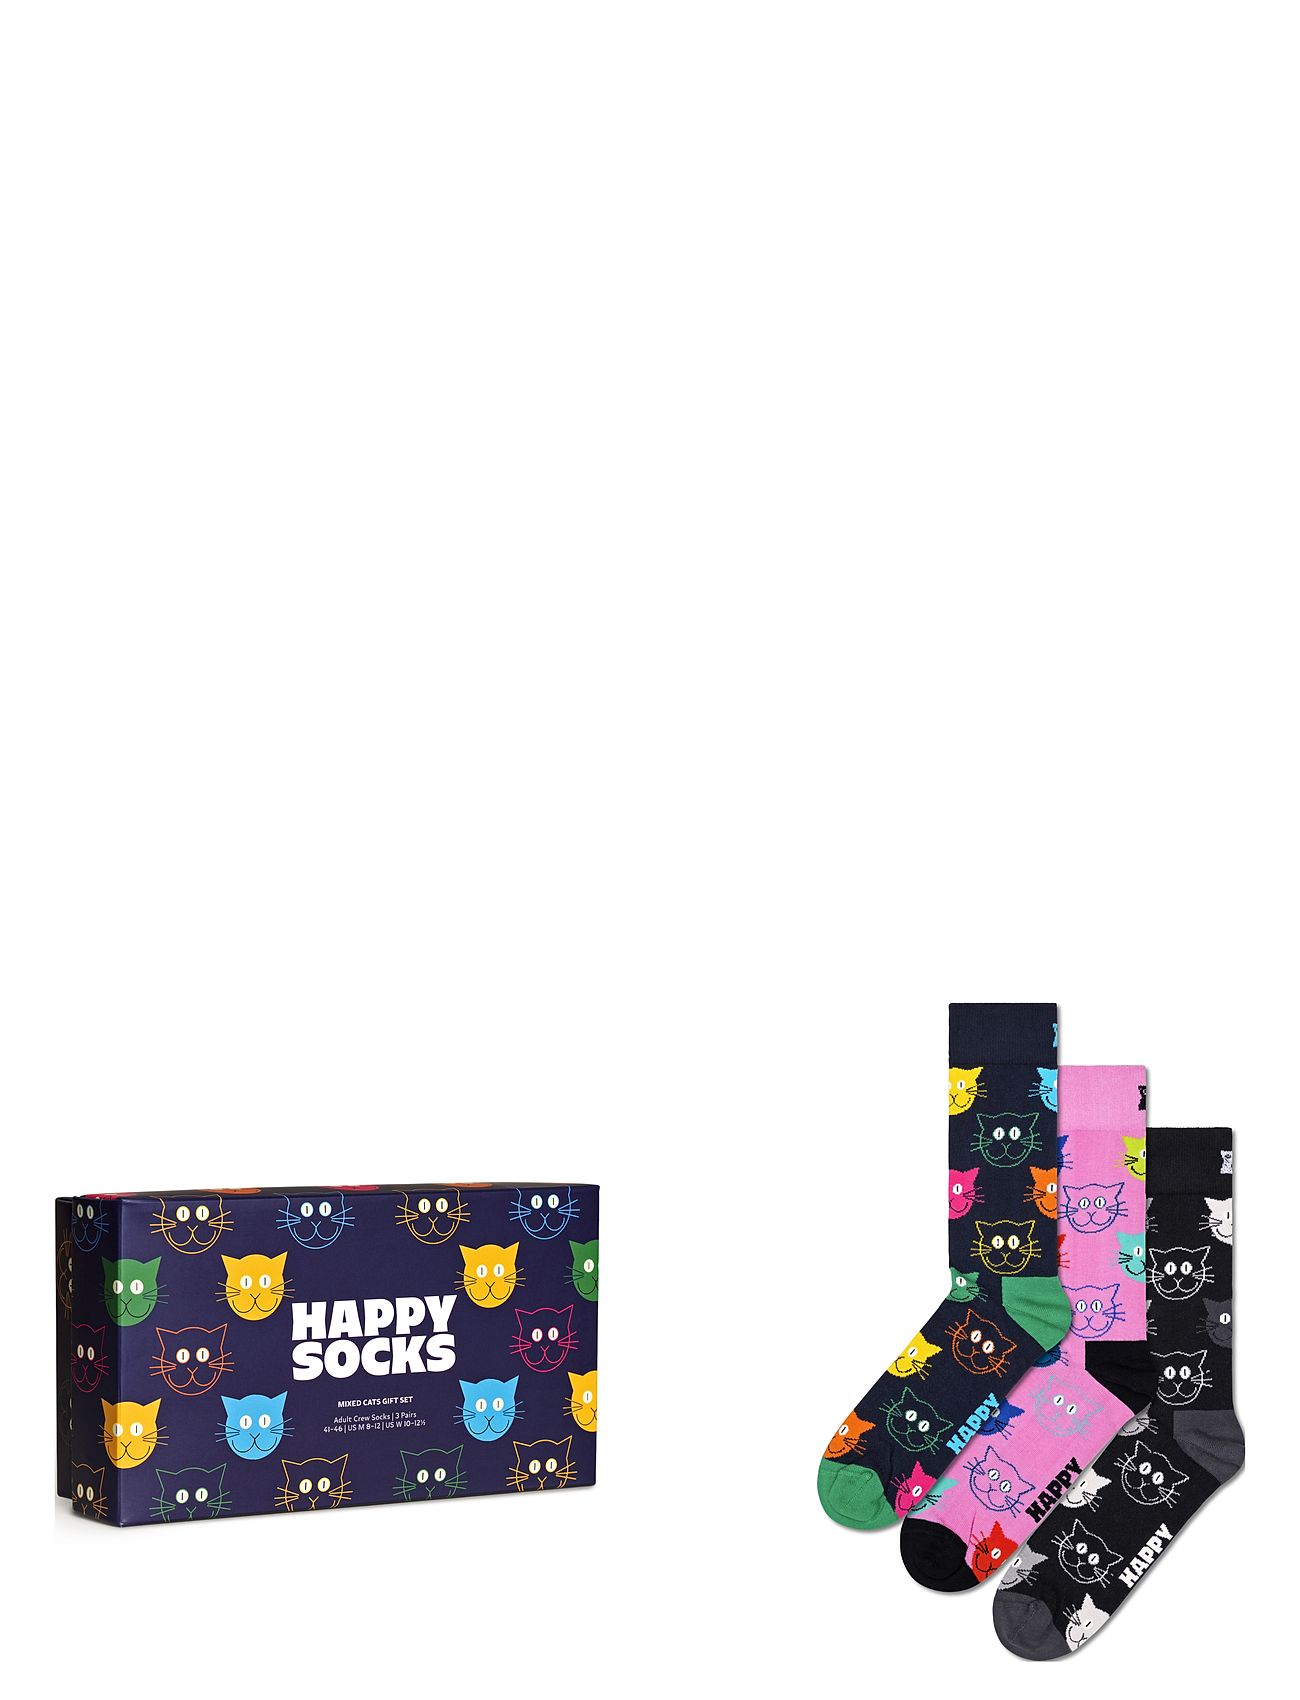 3-Pack Mixed Cat Socks Gift Set Lingerie Socks Regular Socks Navy Happy Socks